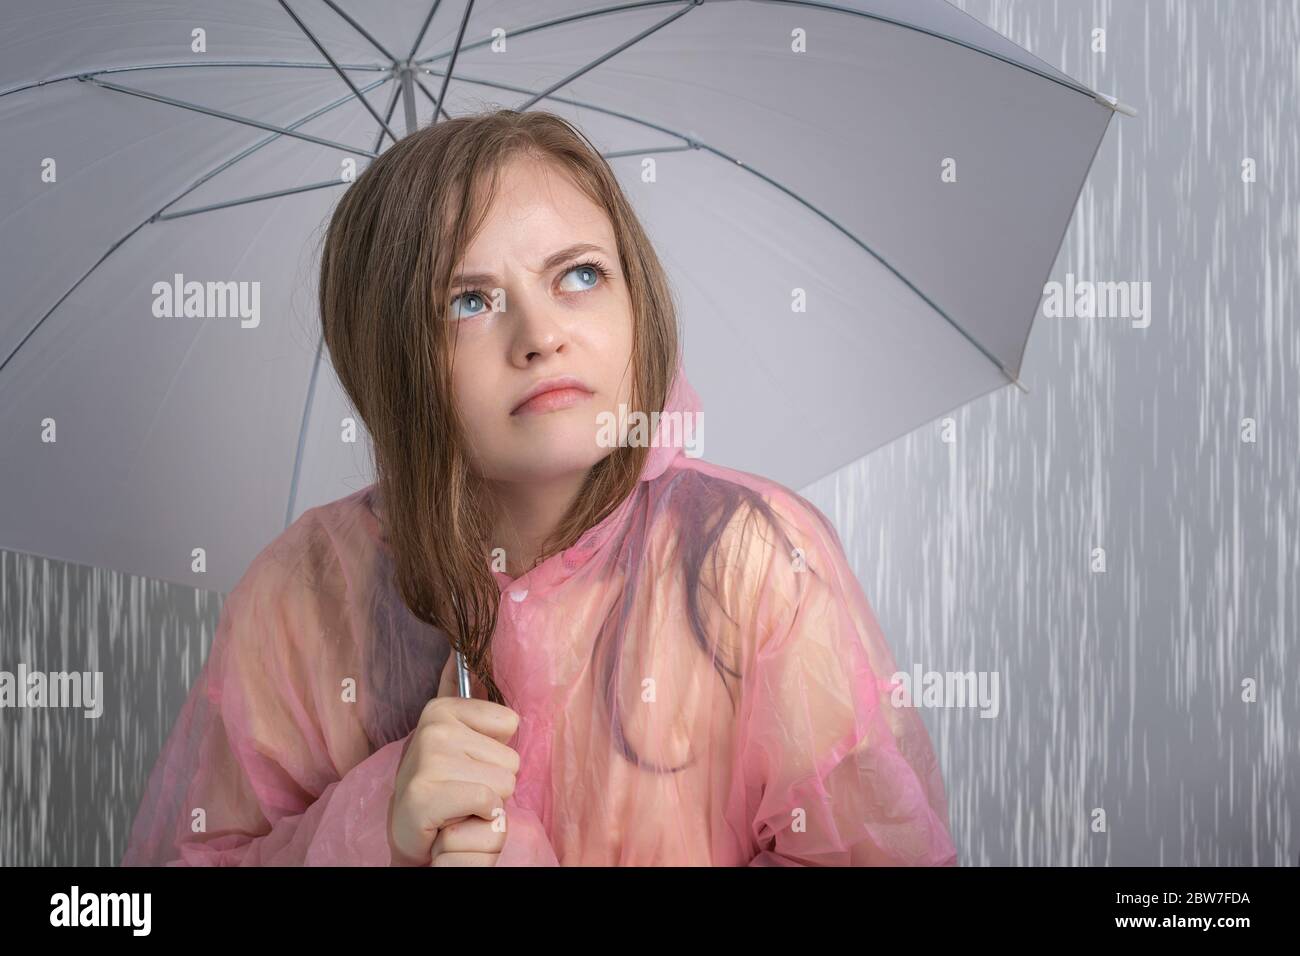 Junge kaukasische Frau Mädchen in einem rosa Regenmantel hält Regenschirm unter starkem Regen mit lustig verärgert Gesicht. Konzept der Regenzeit Stockfoto